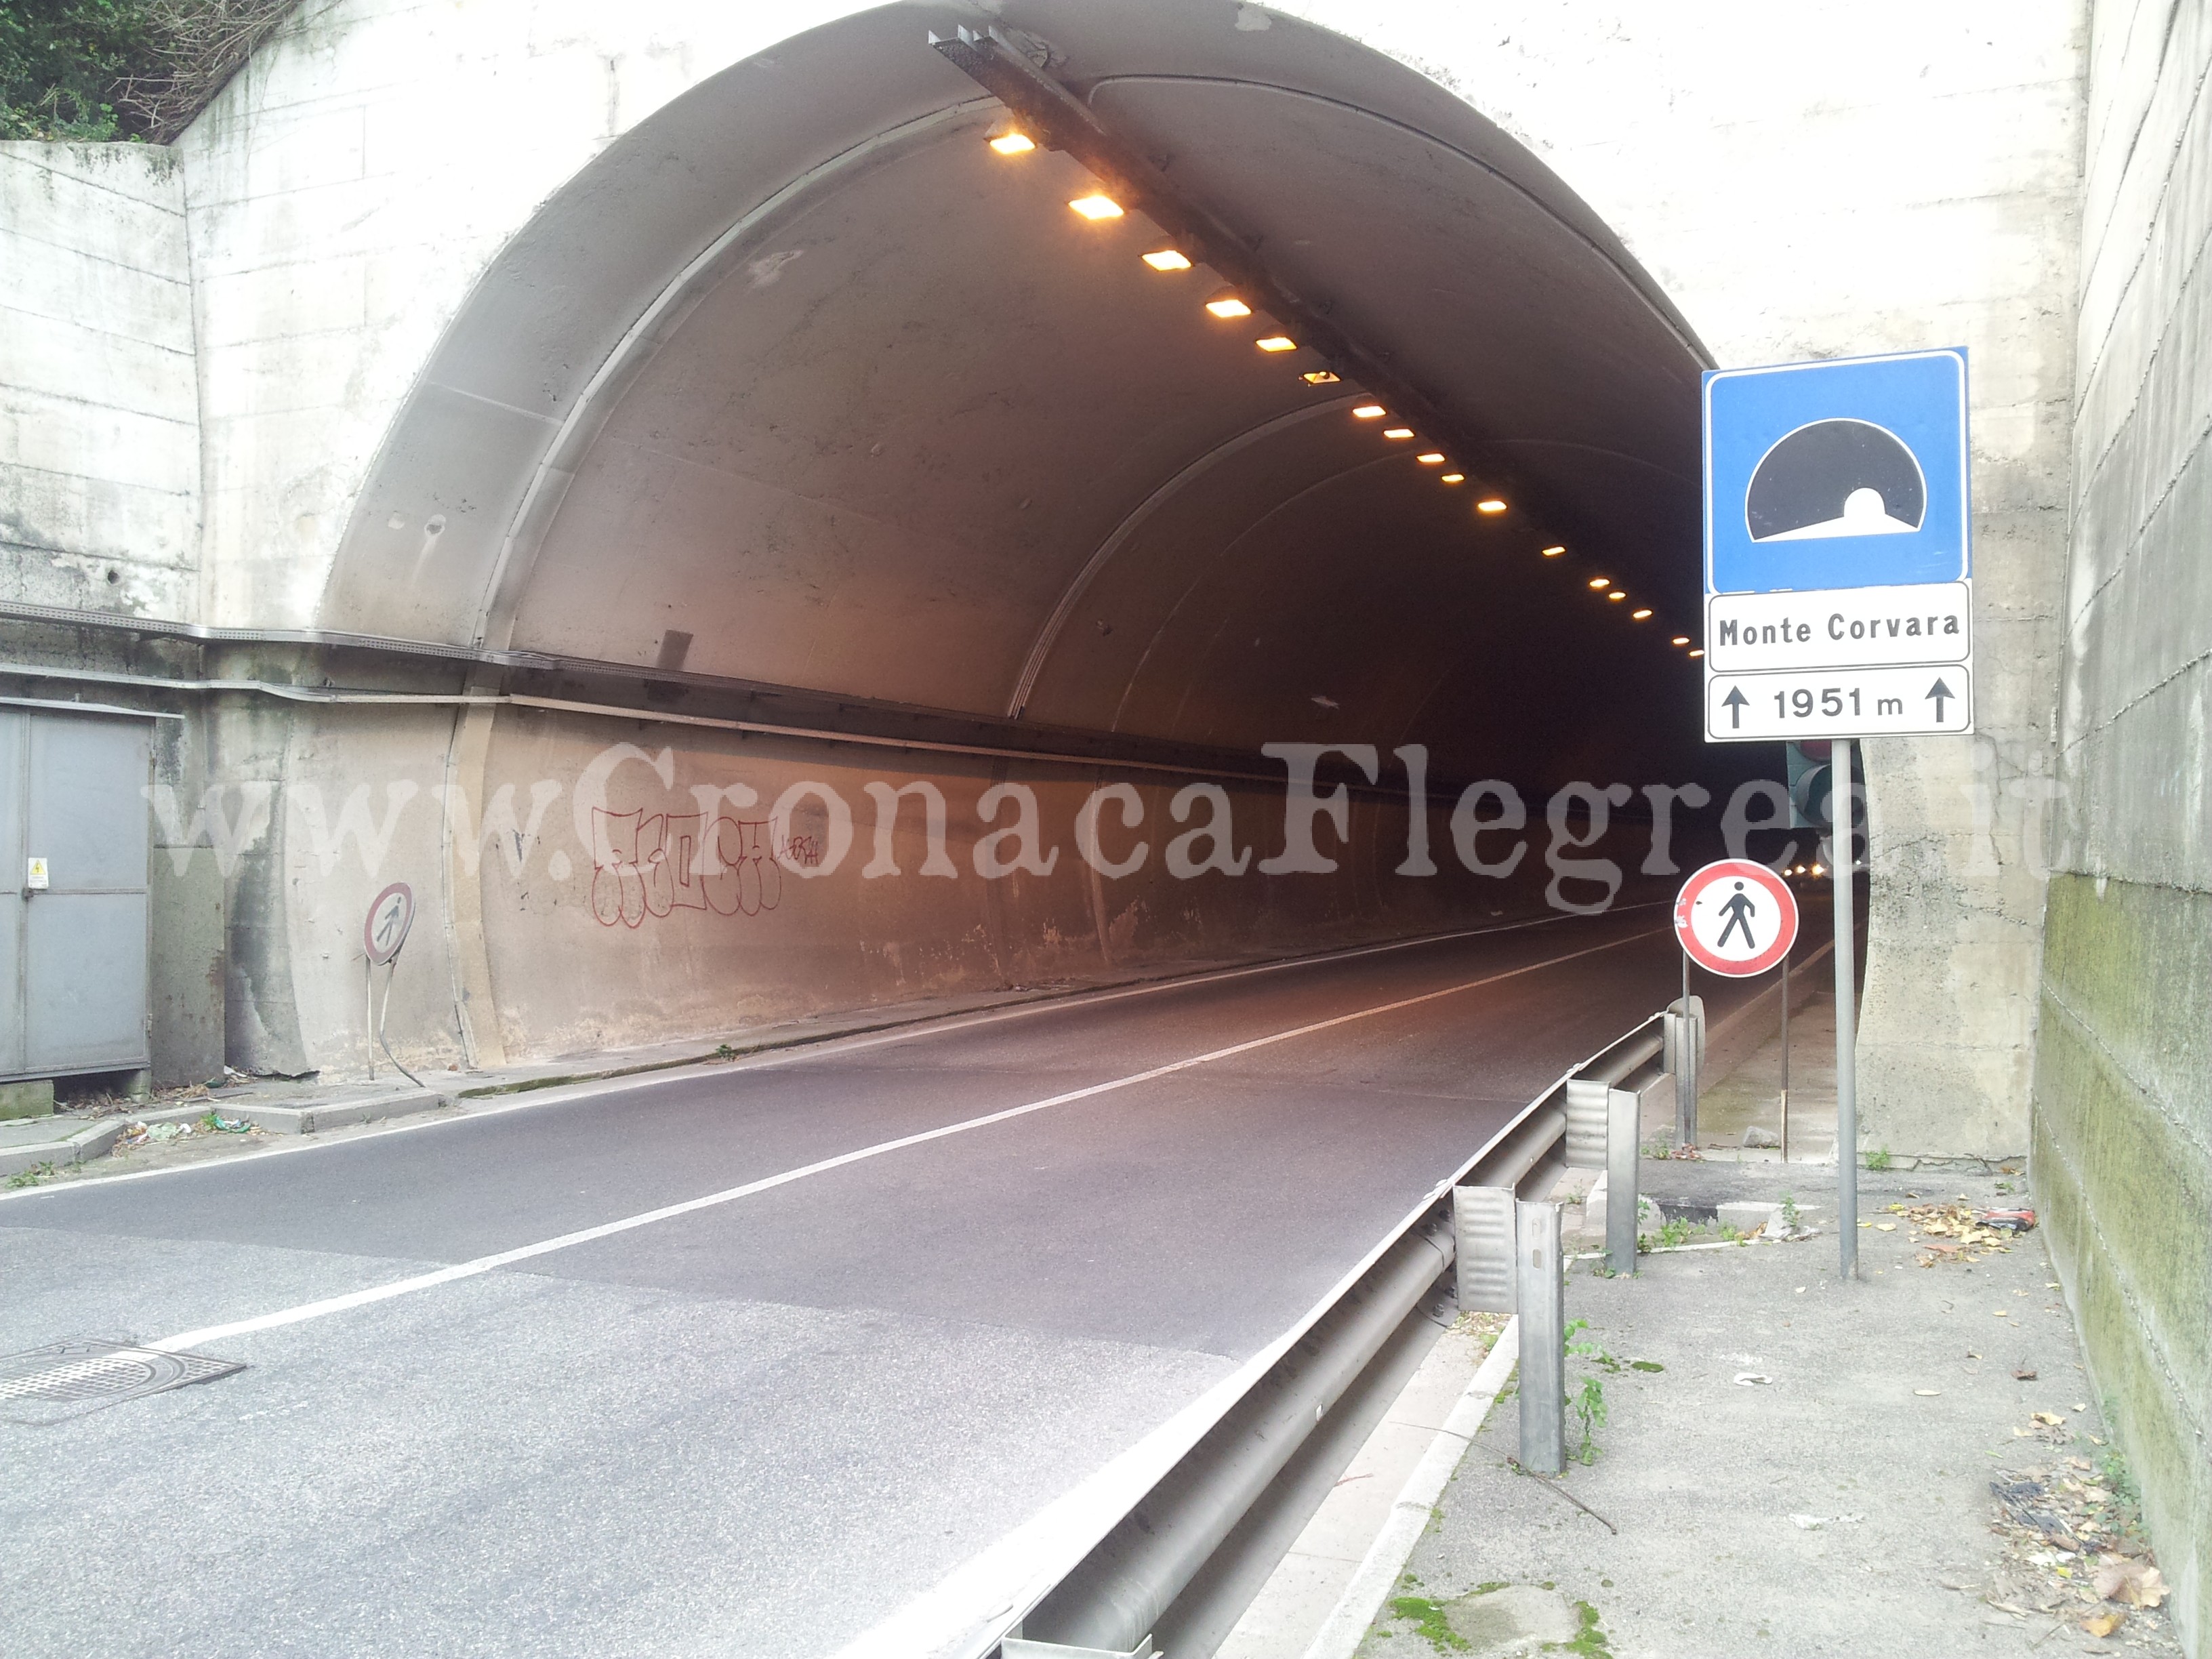 Chiuso per motivi di sicurezza il tunnel che collega Pozzuoli e Quarto